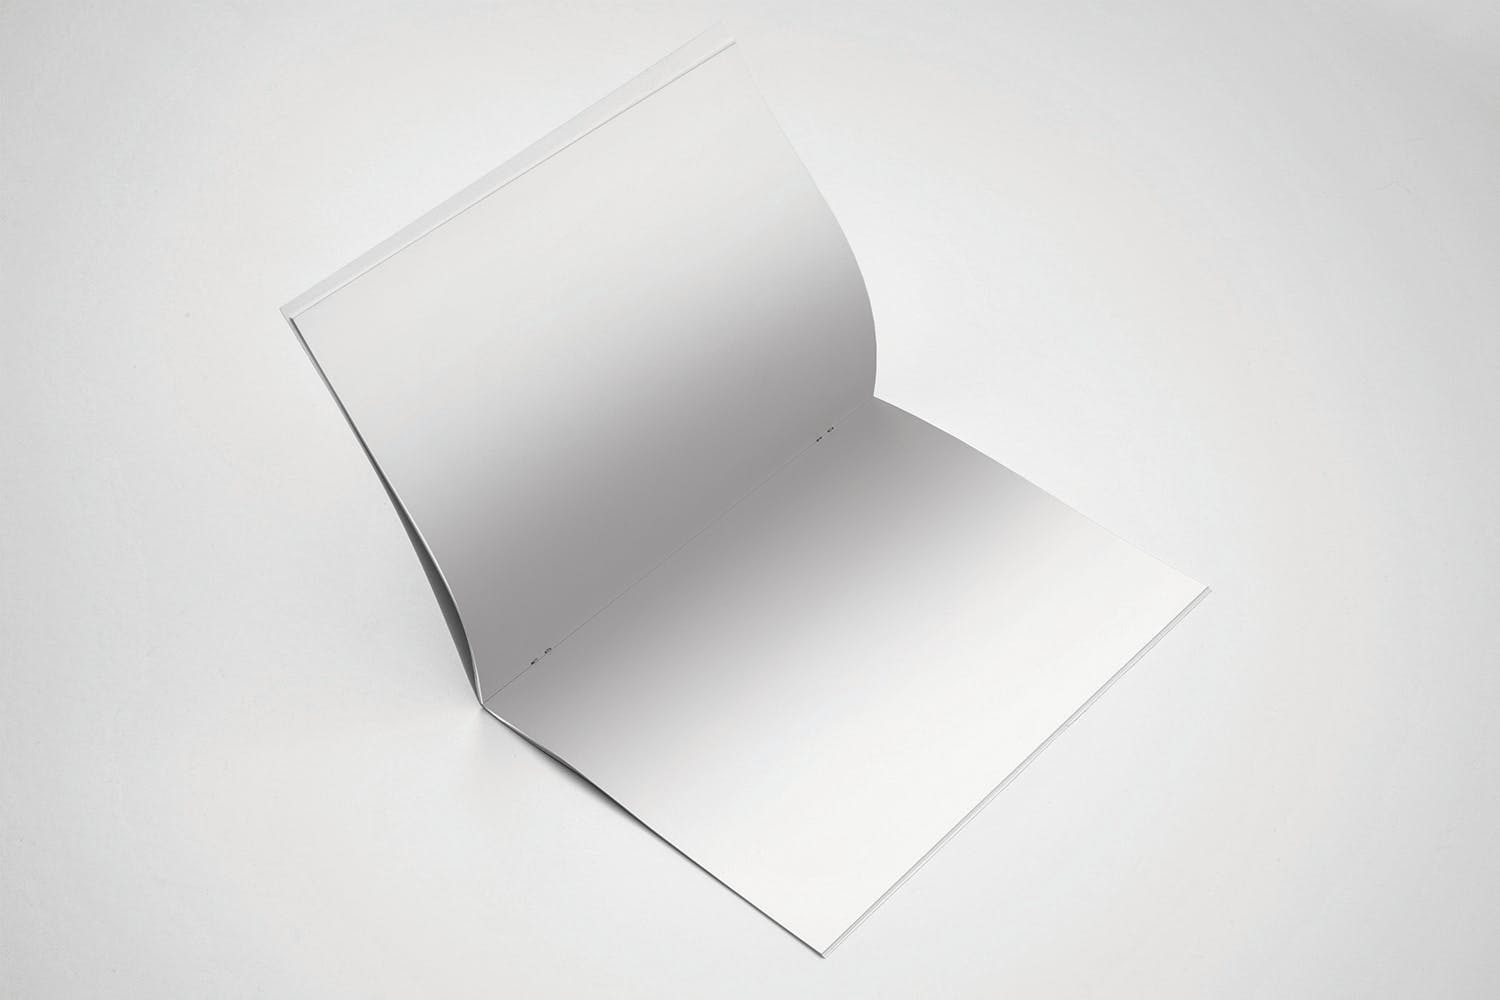 美国信纸规格宣传册翻页效果图样机蚂蚁素材精选 US Letter Brochure Mockup Open Page插图(1)